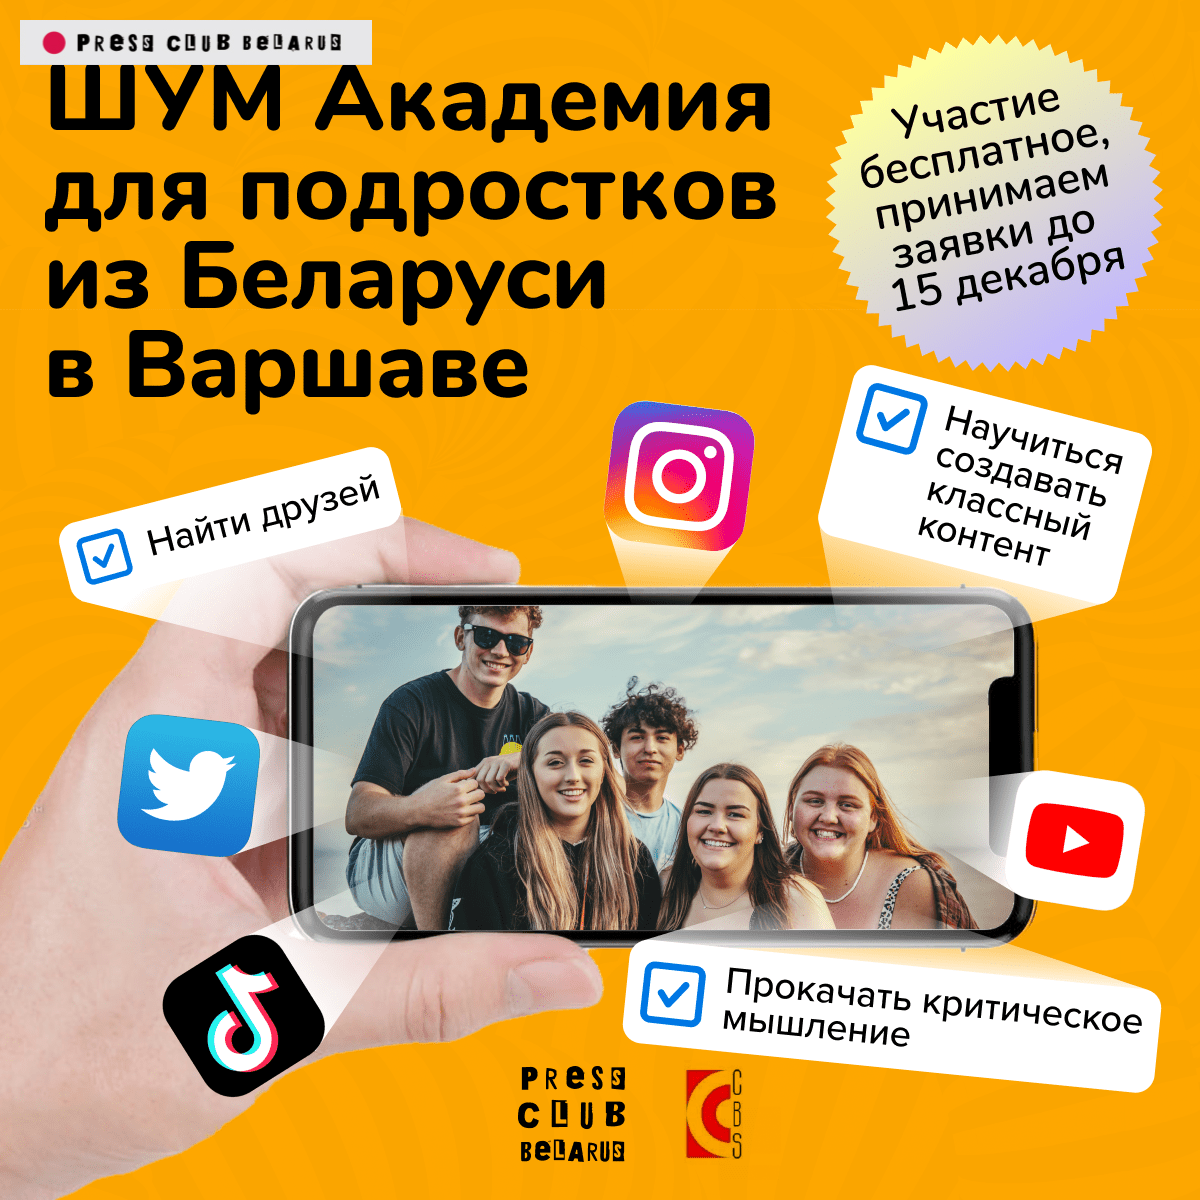 В Варшаве стартует «ШУМ Академия» для подростков из Беларуси